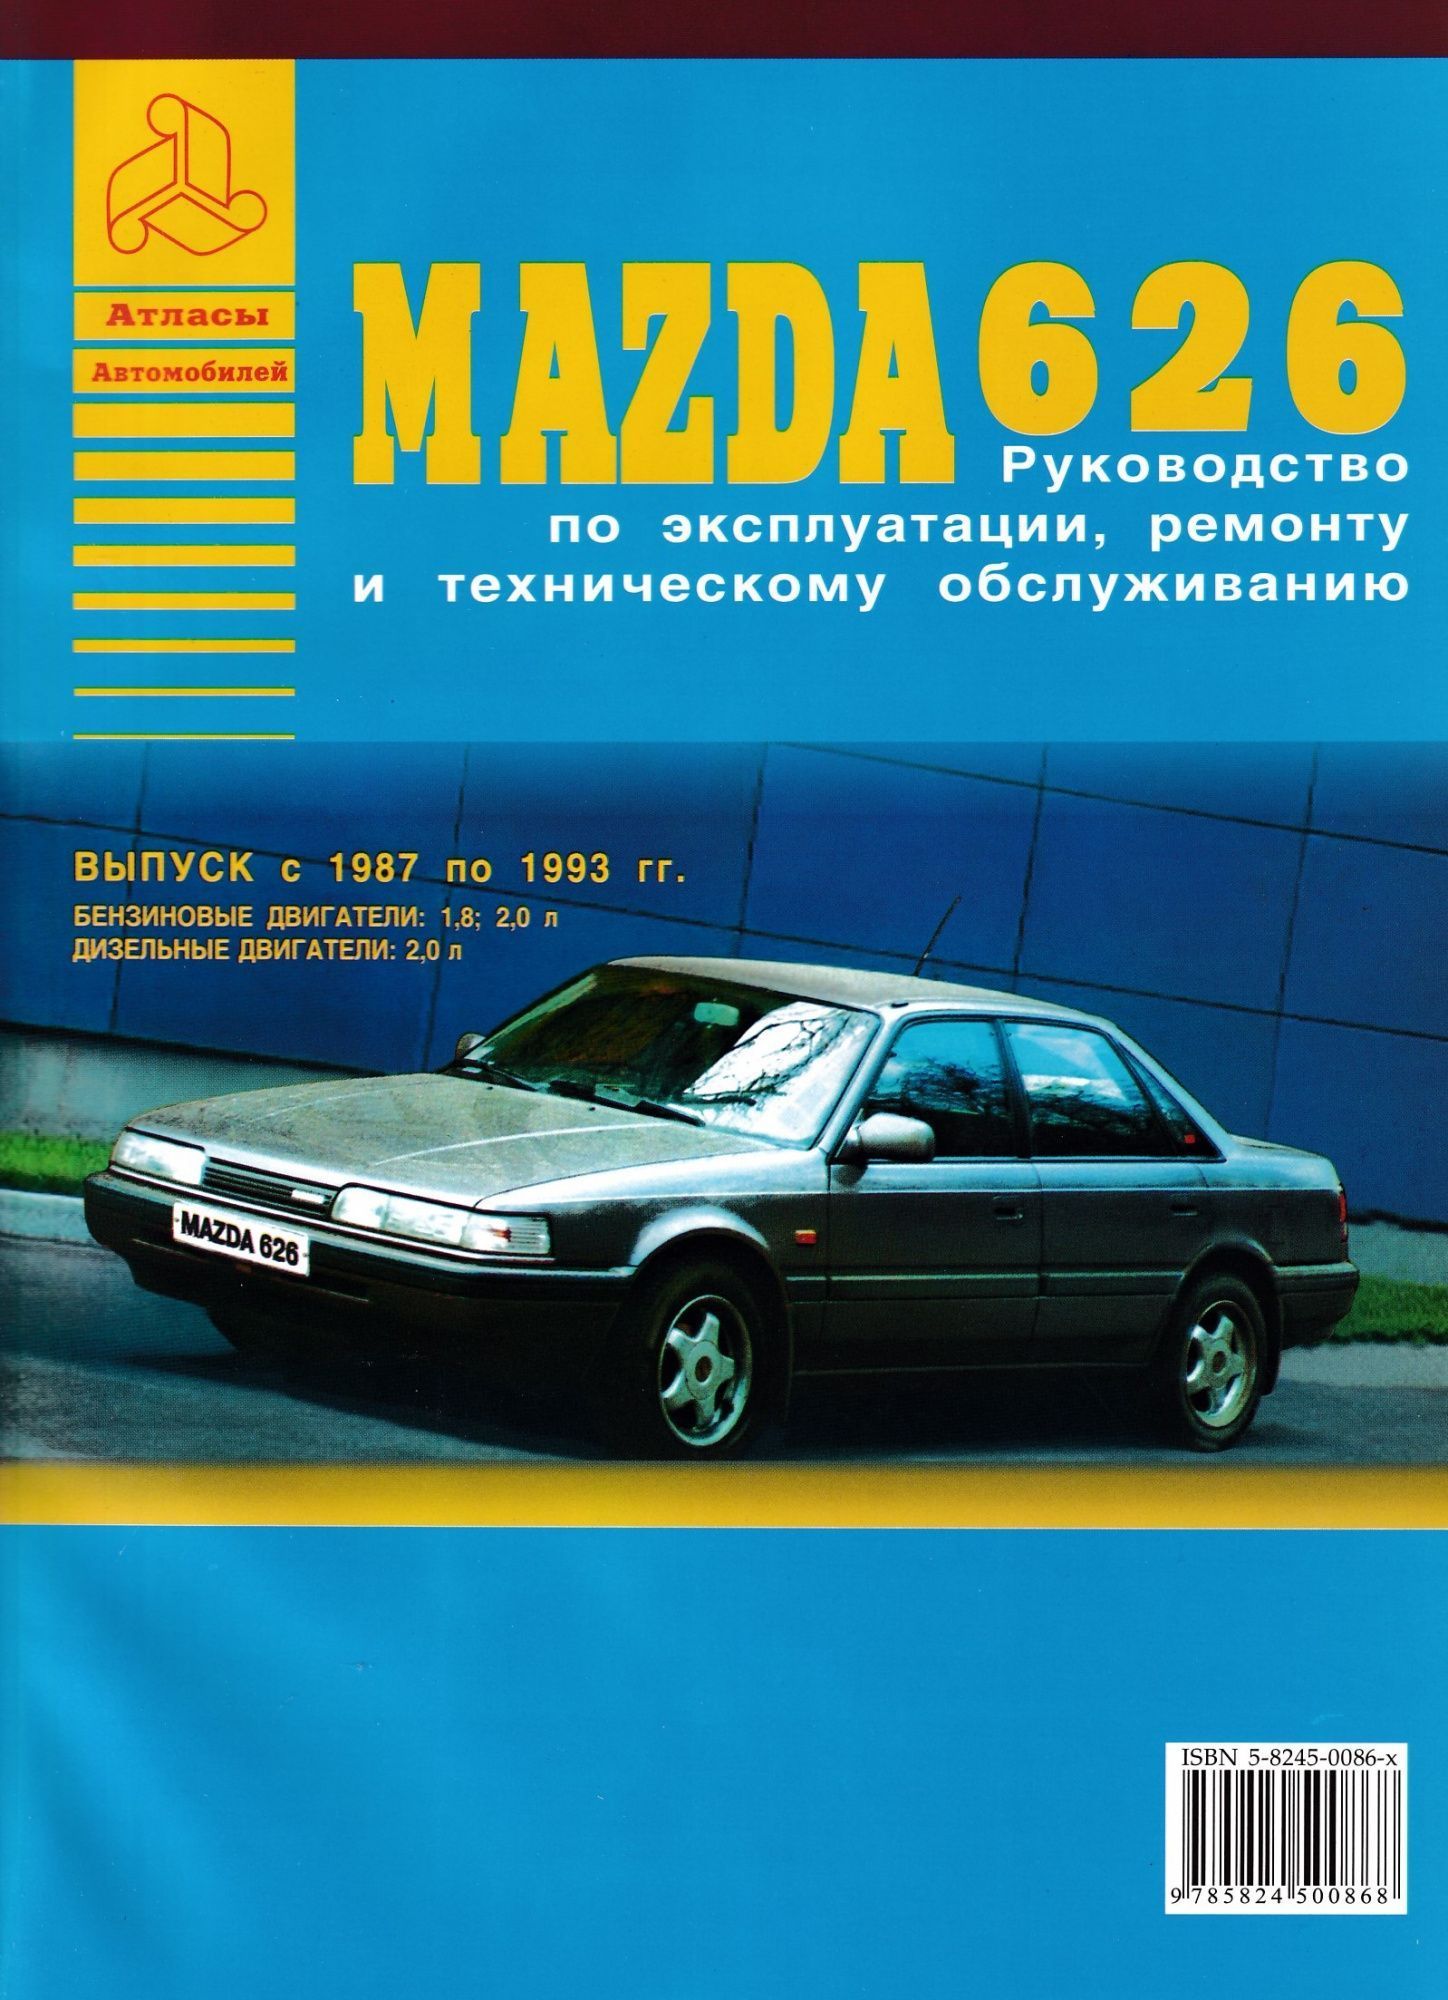 УЦЕНКА - Mazda 626 1987-1993. Книга, руководство по ремонту и эксплуатации. Атласы Автомобилей